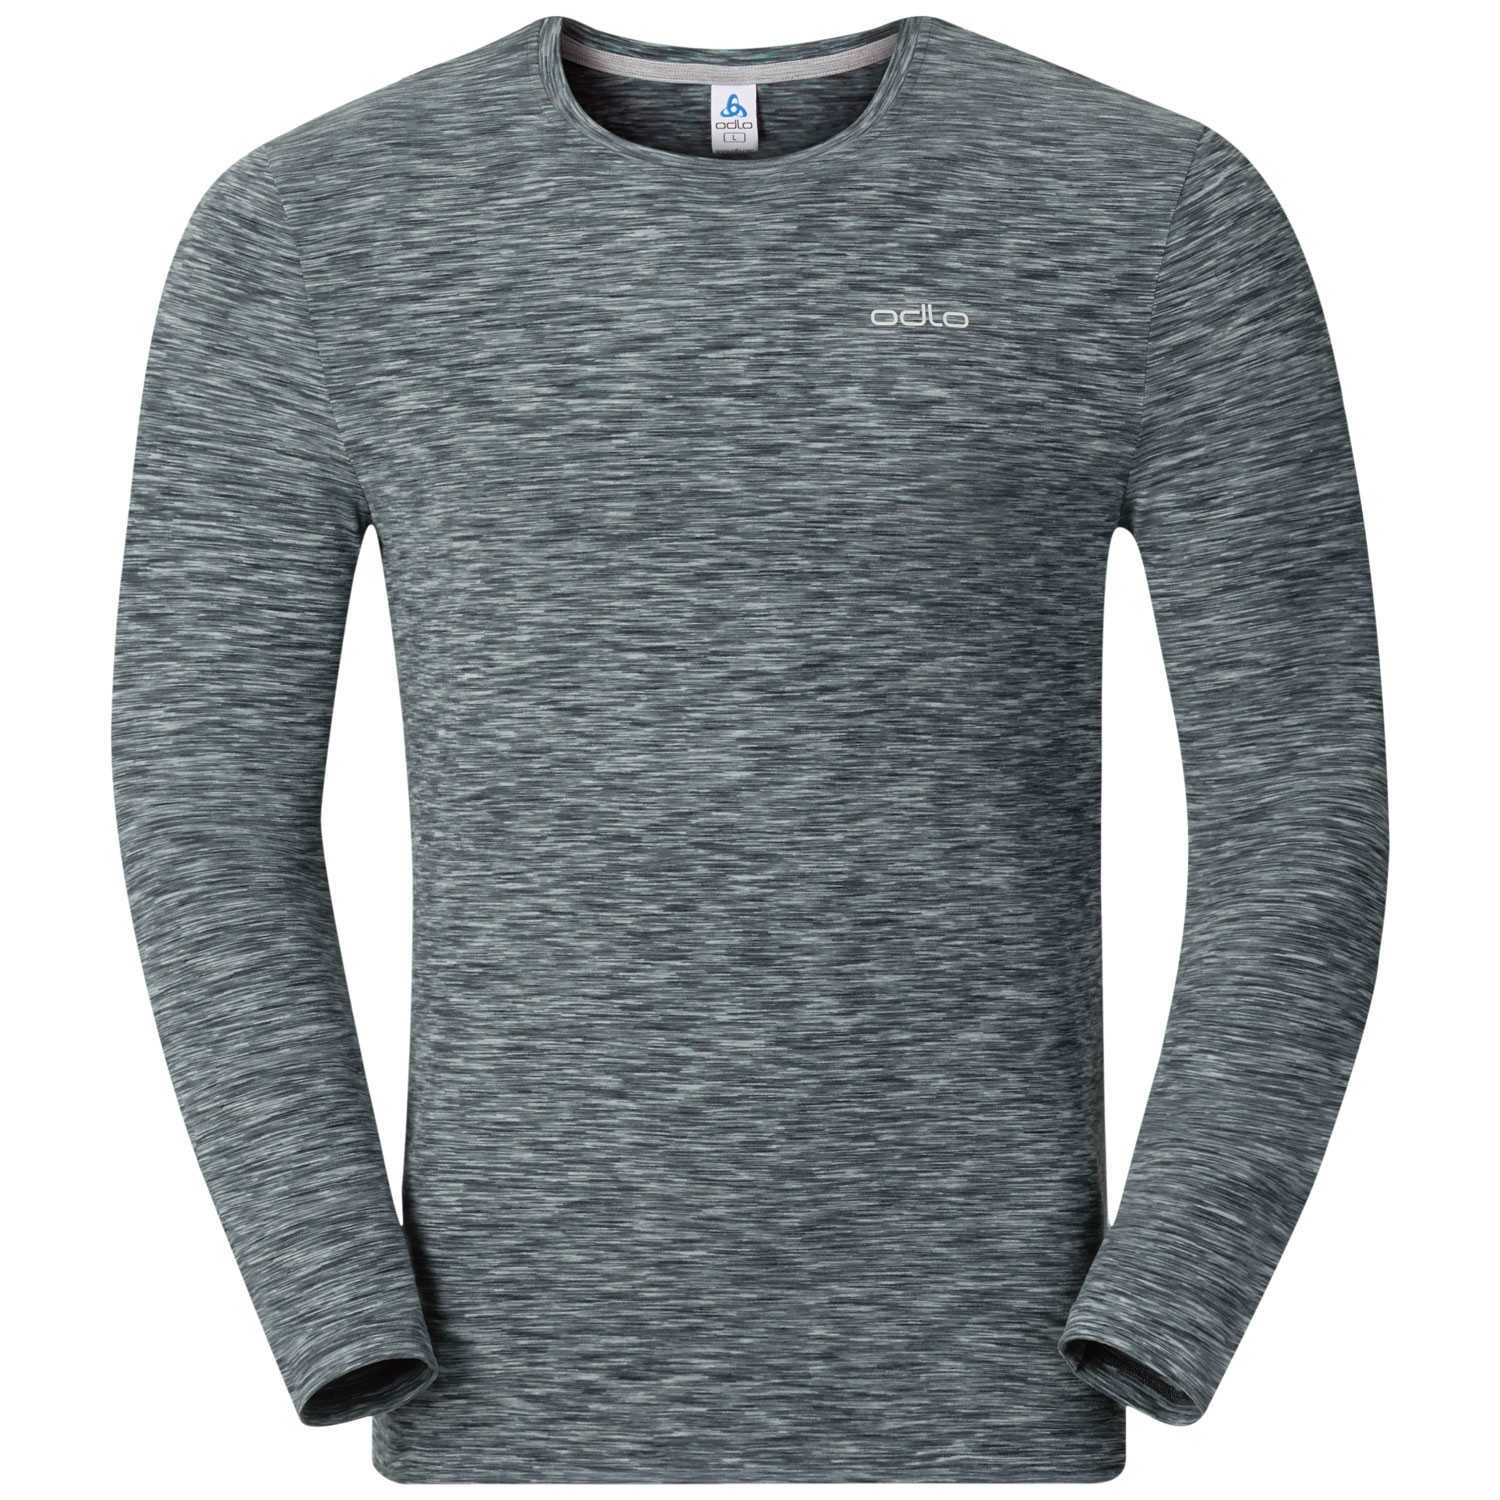 T Shirt Sillian - Odlo Concrete Grey Space Dye